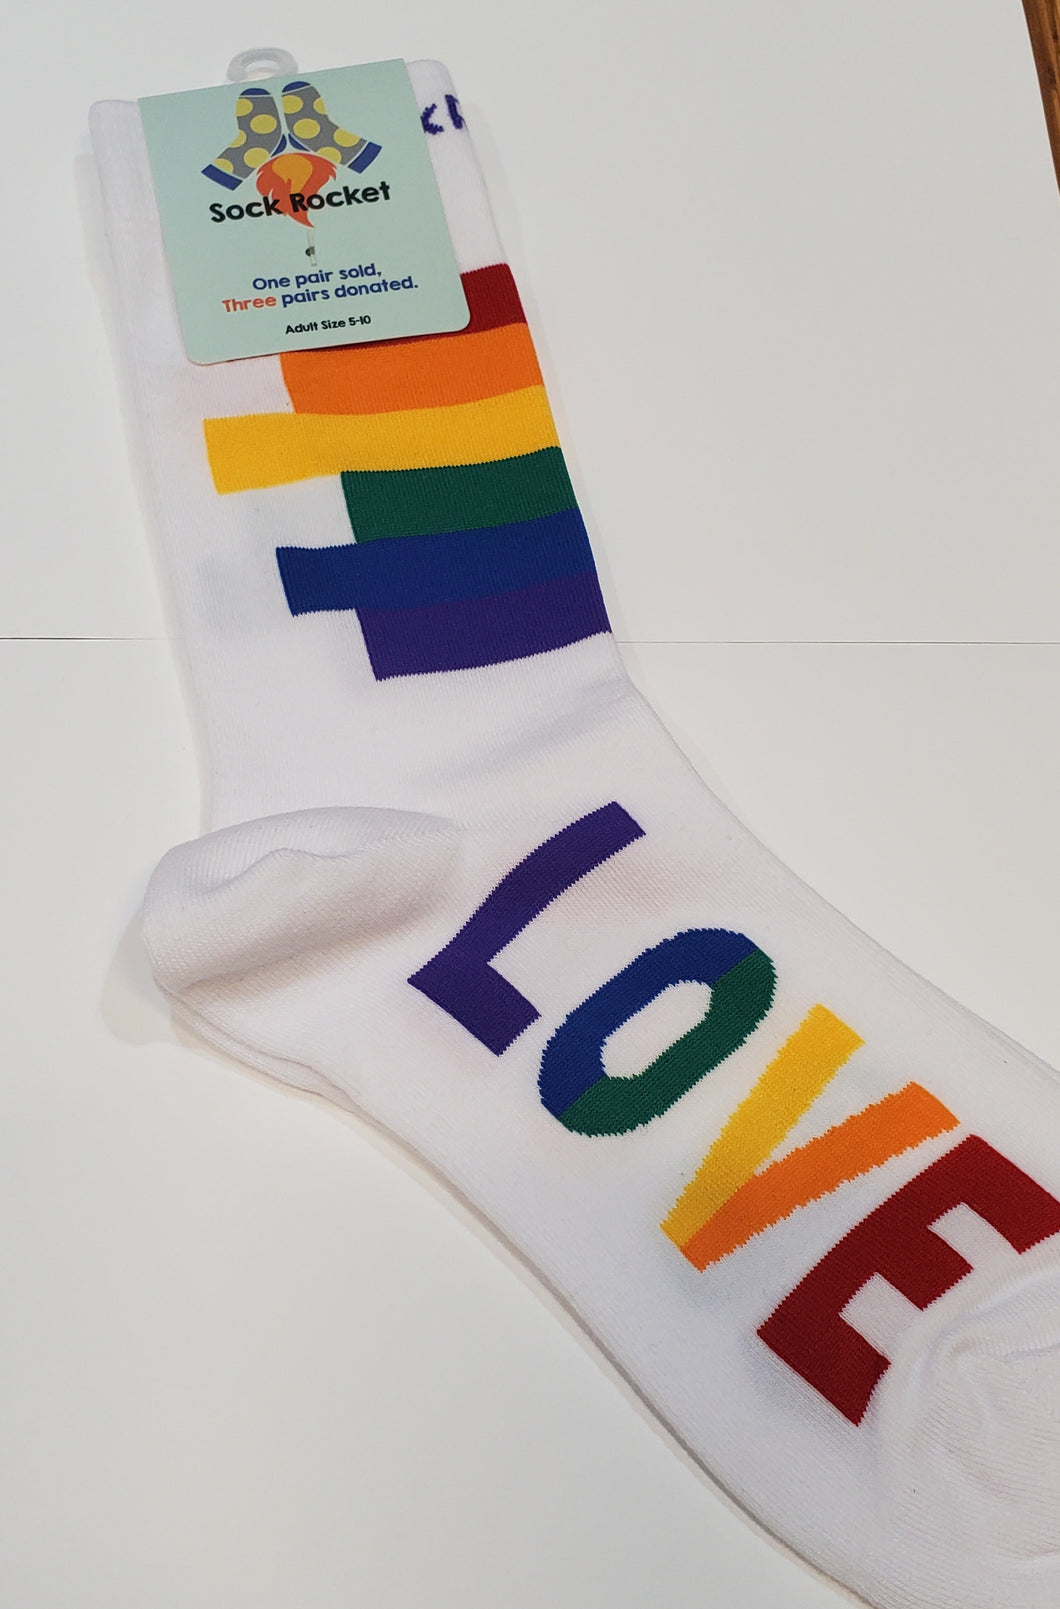 Pride Love Socks